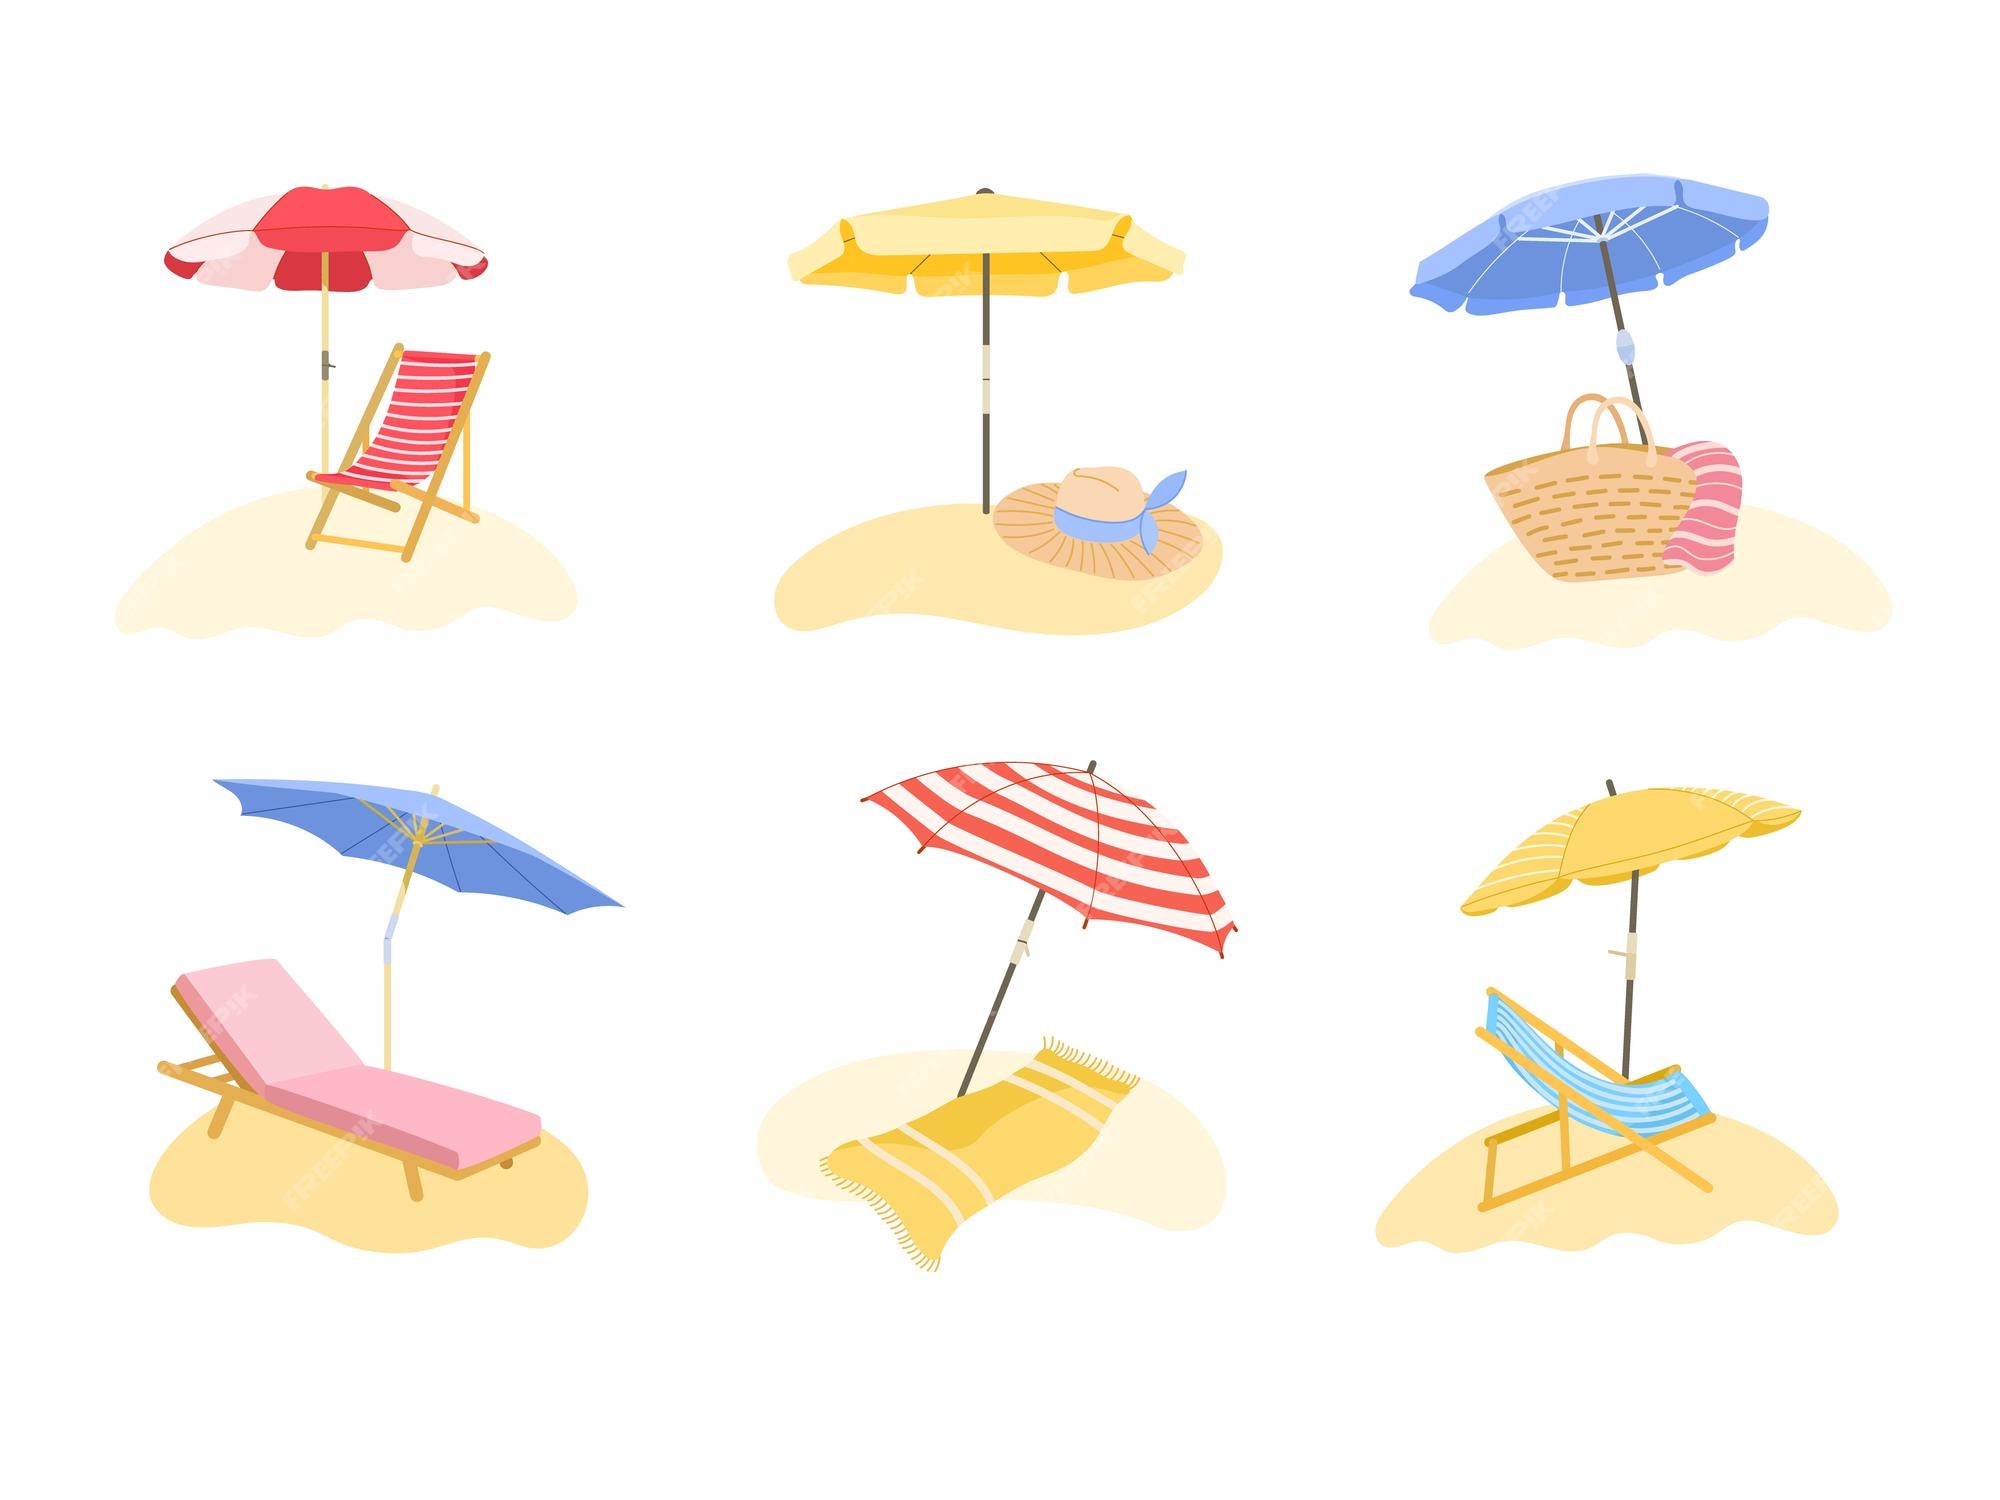 ontsnapping uit de gevangenis Mediaan Kunstmatig Strandzonnescherm ligstoel en parasol voor bescherming van de zon voor  zomervakantie op strand vector illustratie set | Premium Vector